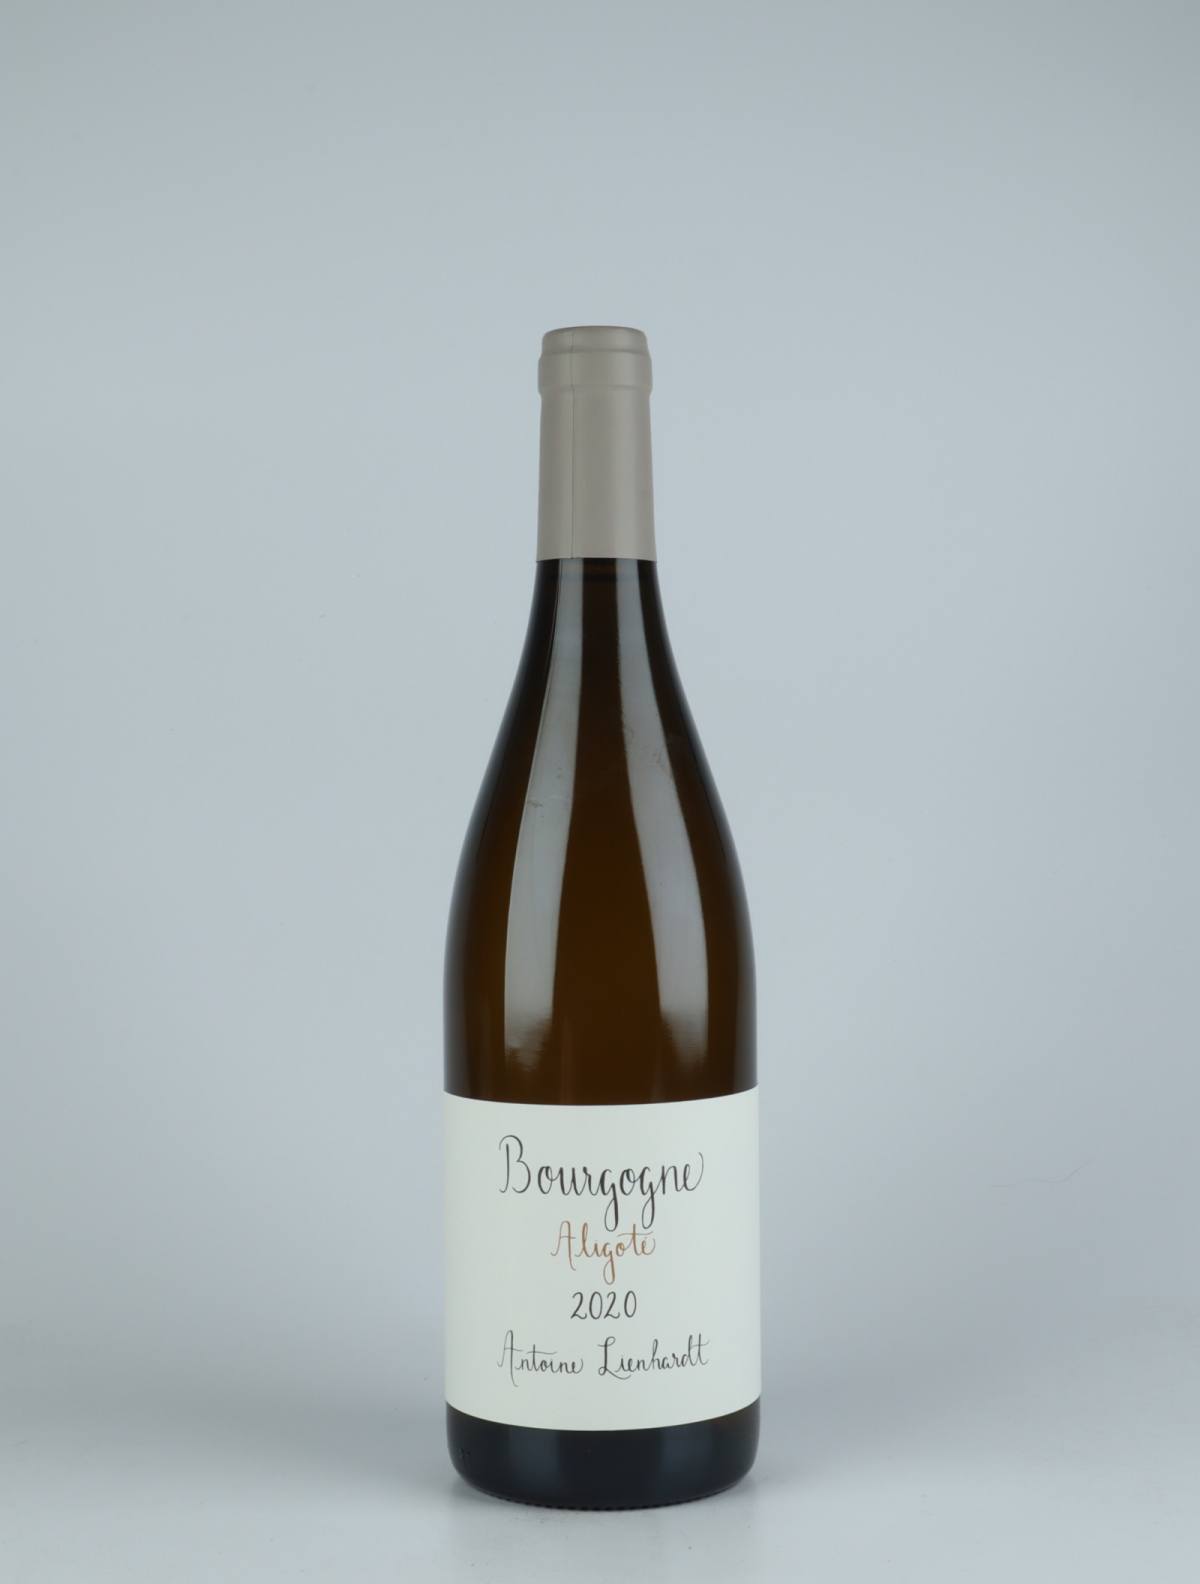 A bottle 2020 Bourgogne Aligoté White wine from Antoine Lienhardt, Burgundy in France